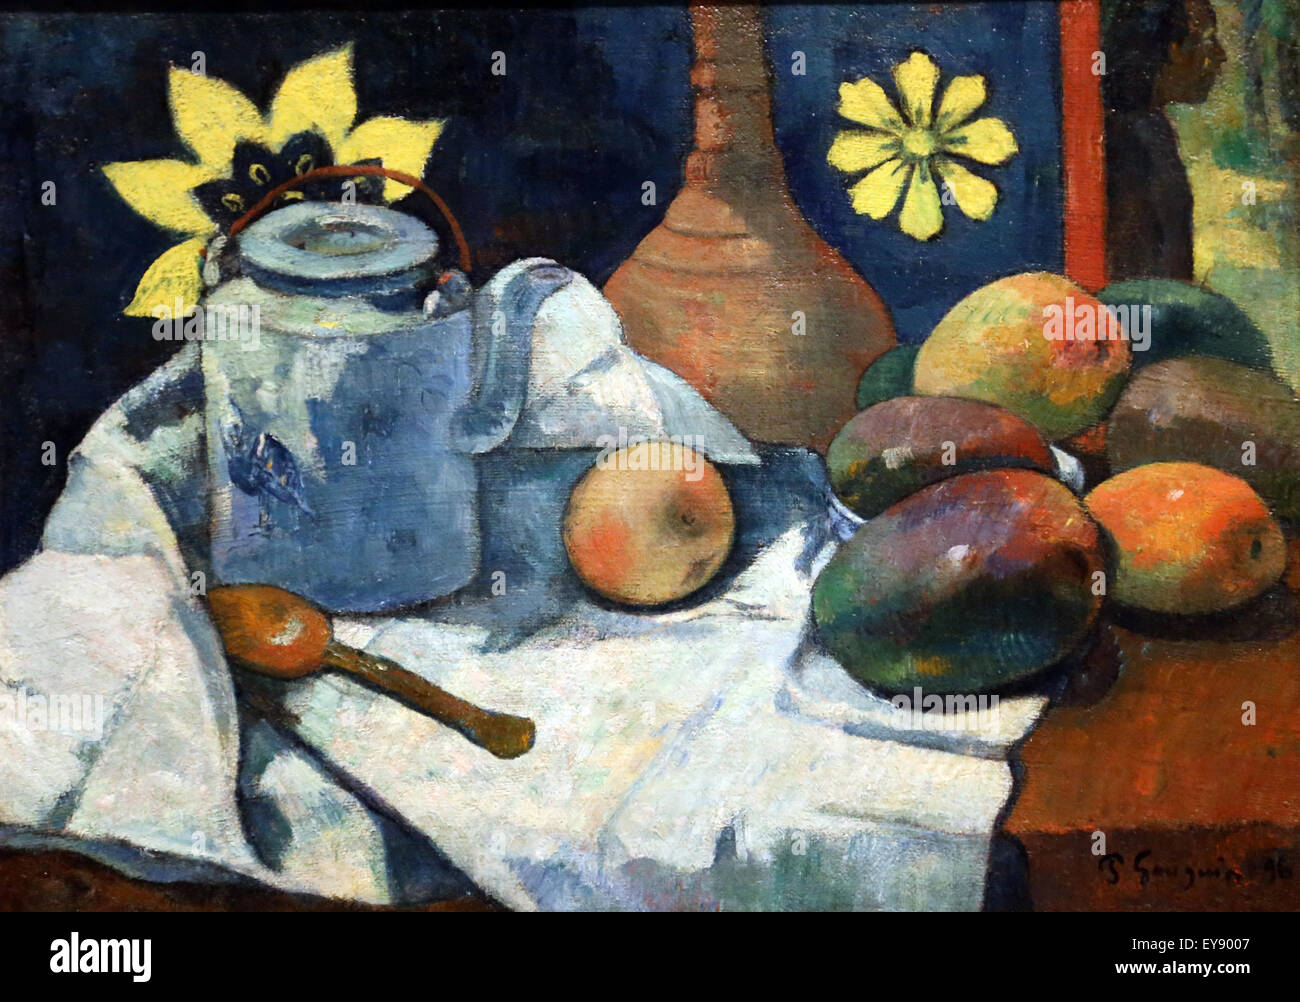 Paul Gauguin (1848-1903). Französischer Maler. Stillleben mit Teapol und Obst, 1896. Öl auf Leinwand. Metropolitan Museum of Art. NY. Stockfoto